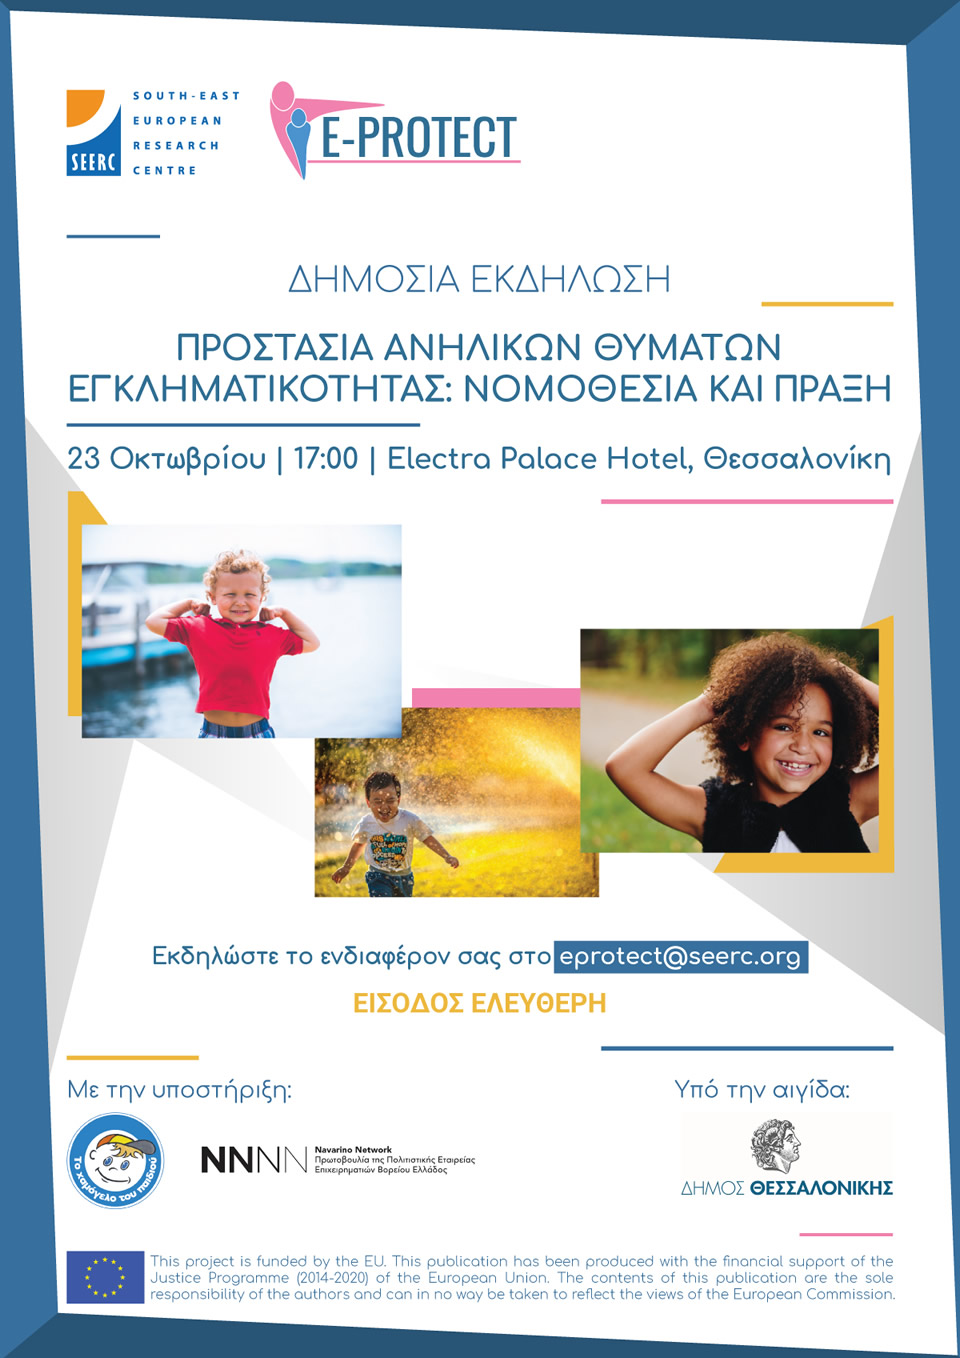 Ε-PROTECT event on 'Protecting Juvenile Crime Victims' by SEERC